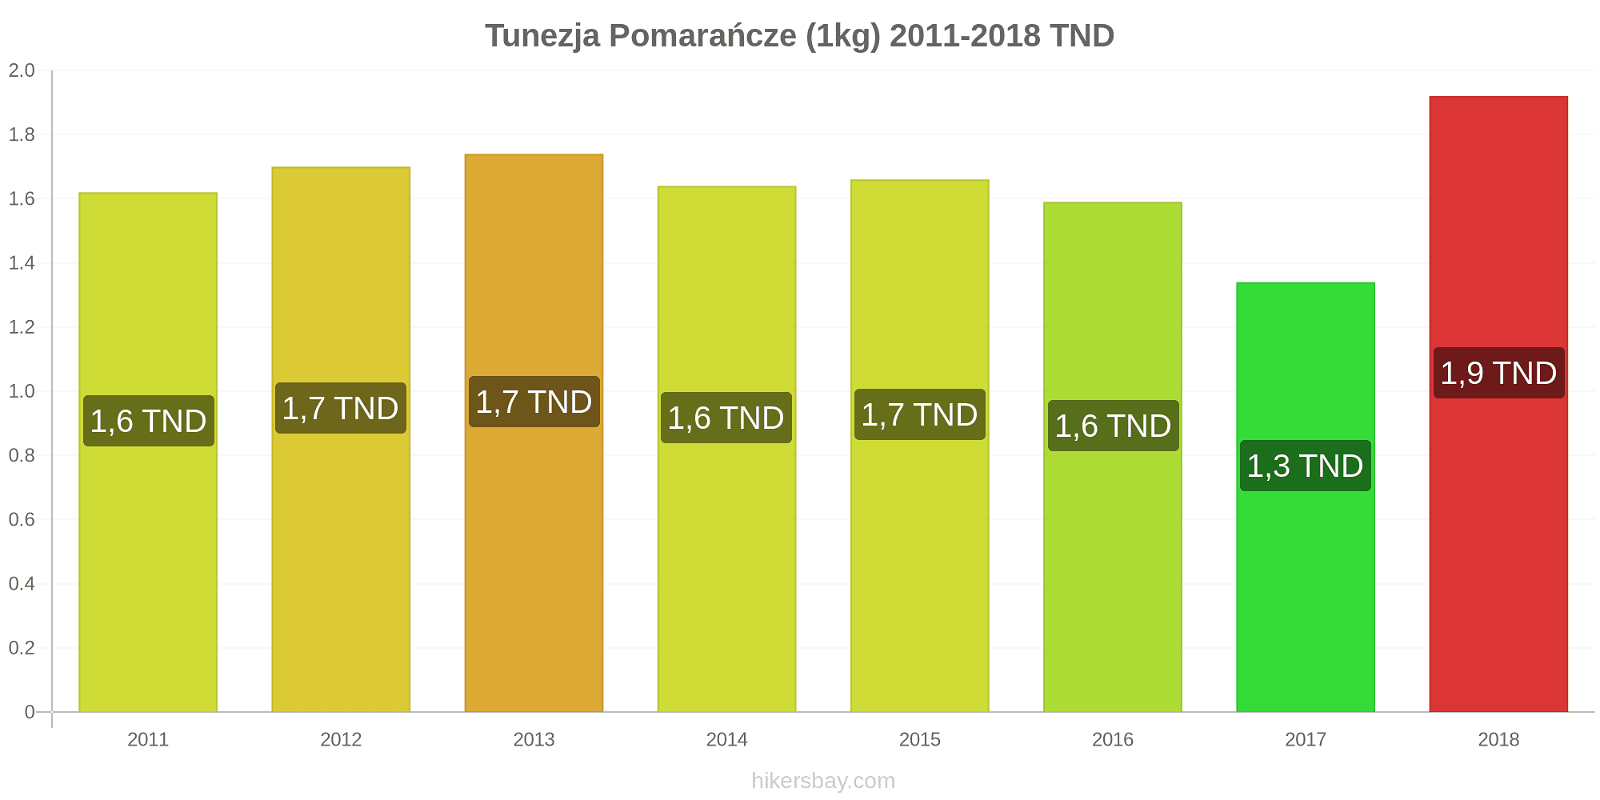 Tunezja zmiany cen Pomarańcze (1kg) hikersbay.com